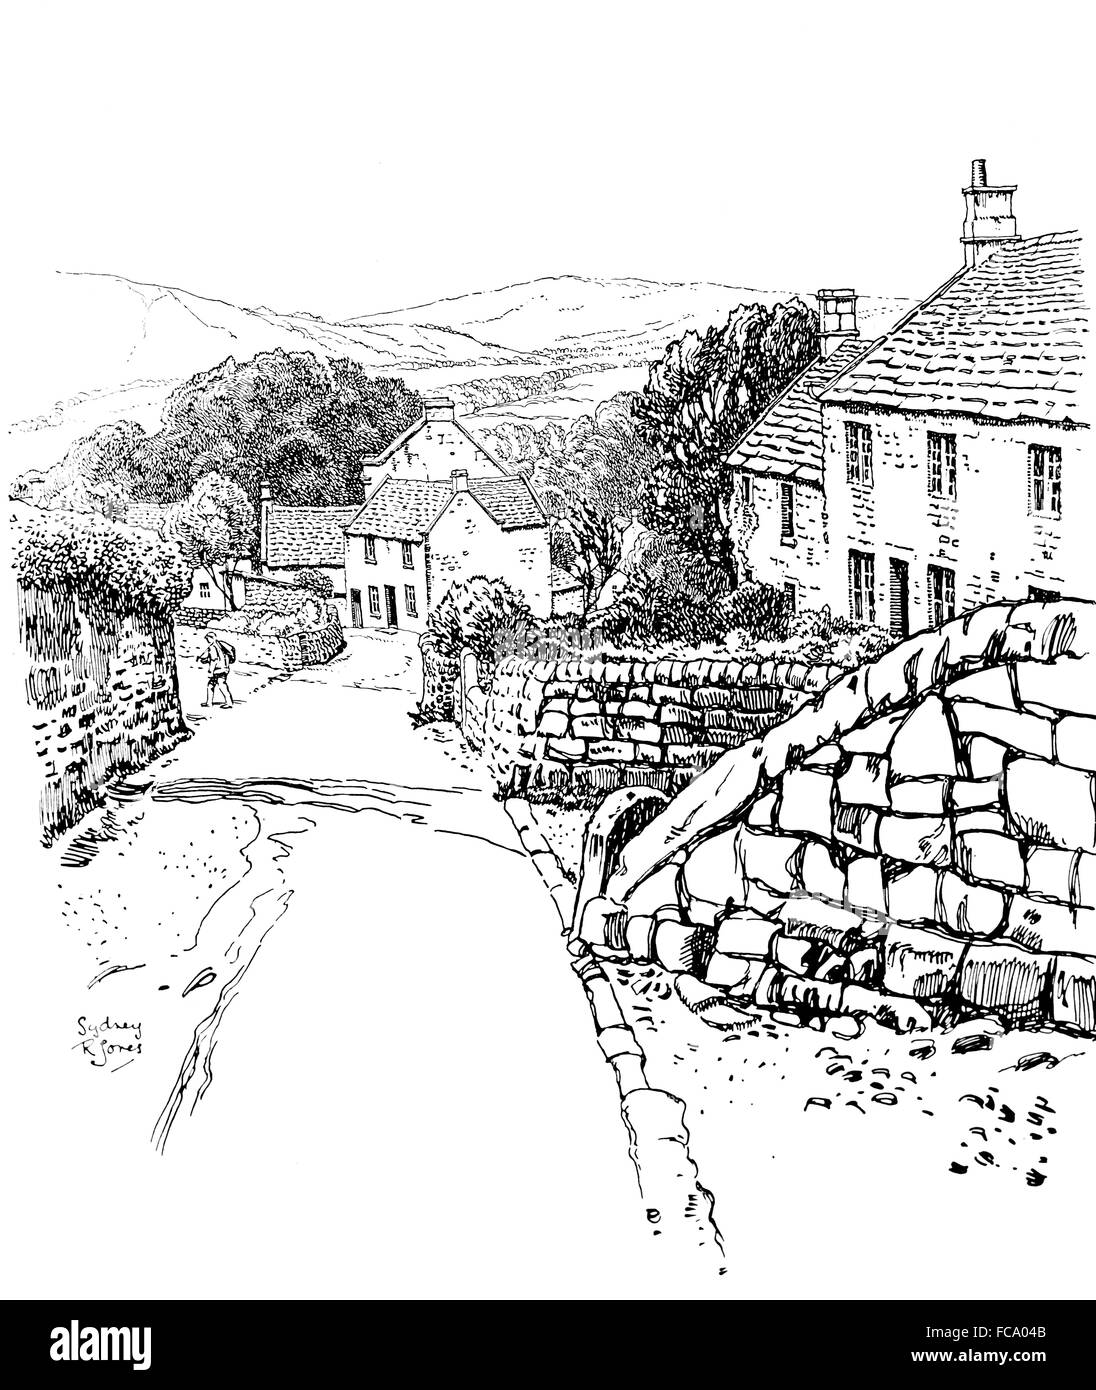 Großbritannien, England, Derbyshire, Stanton in Peak Stein gebaute Häuser, Hauptstraße in1911 Linie Illustration von Sydney R Jones Stockfoto